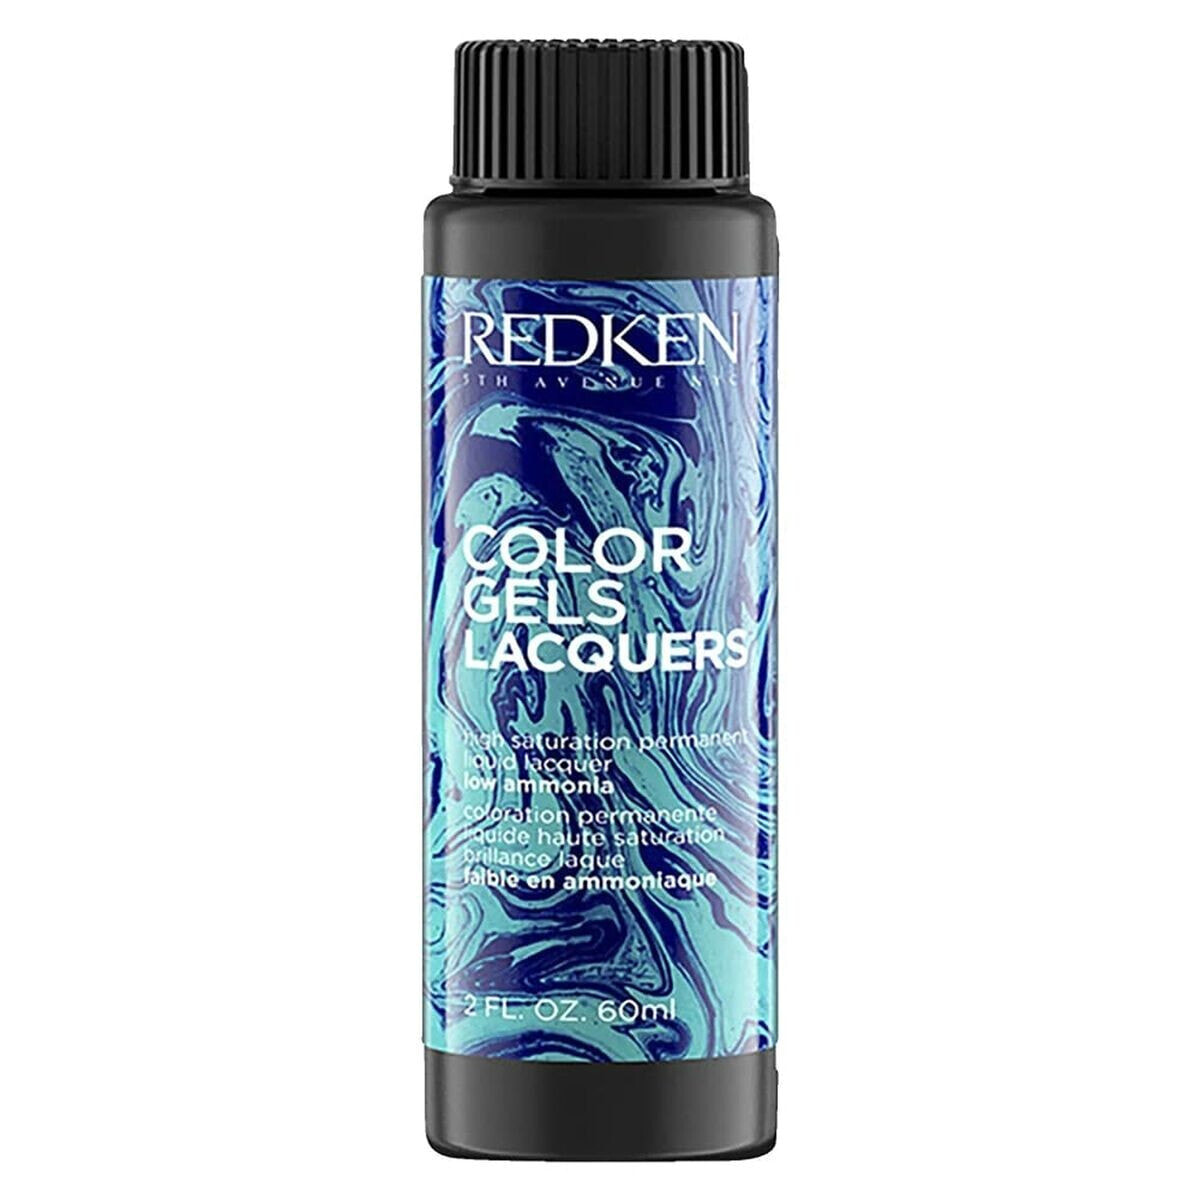 Permanent Colour Redken Color Gel Lacquers 8AB-stardust (3 x 60 ml)